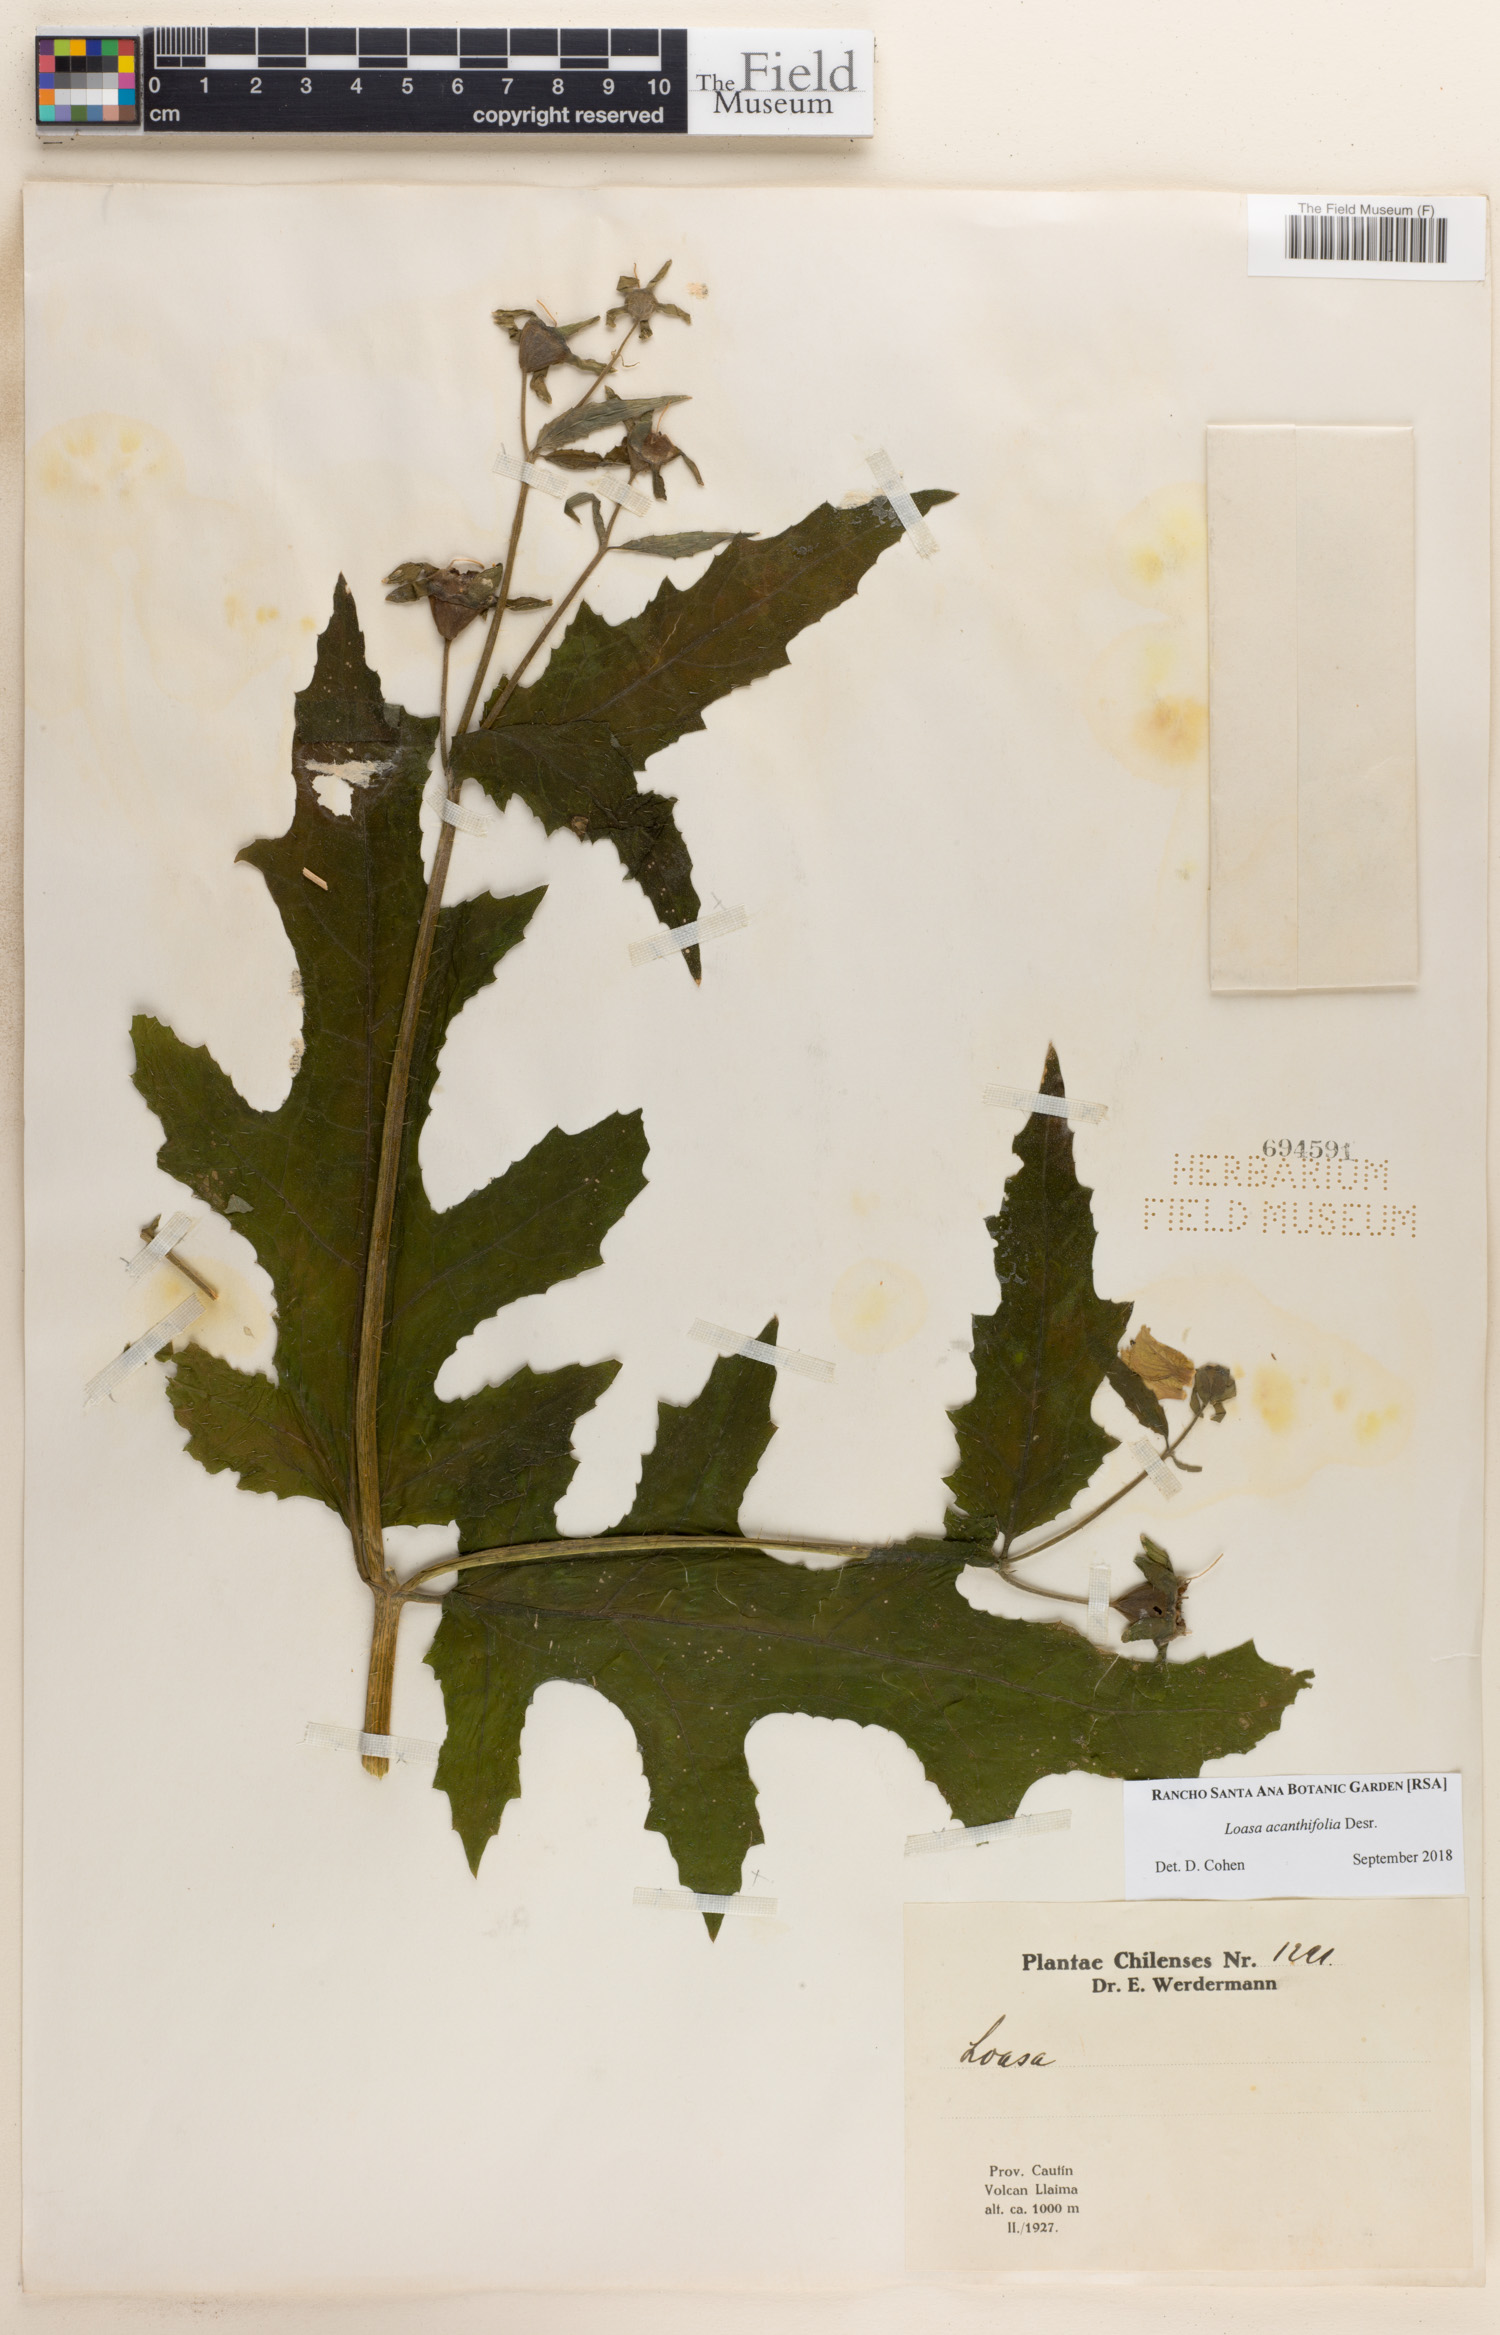 Loasa acanthifolia image